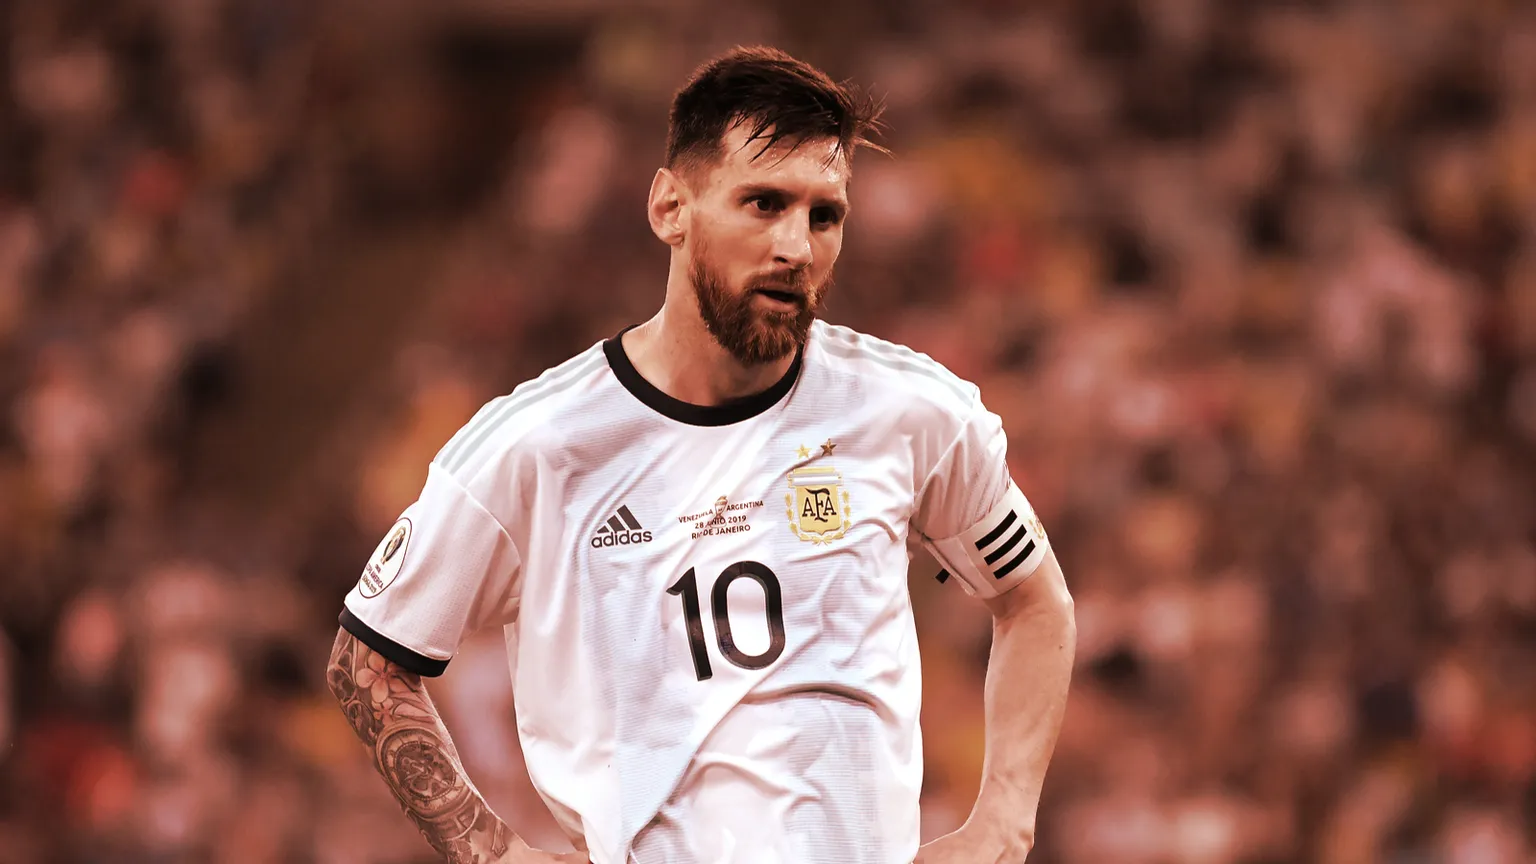 Lionel Messi es posiblemente el mejor jugador de fútbol que ha visto este deporte. Imagen: Shutterstock